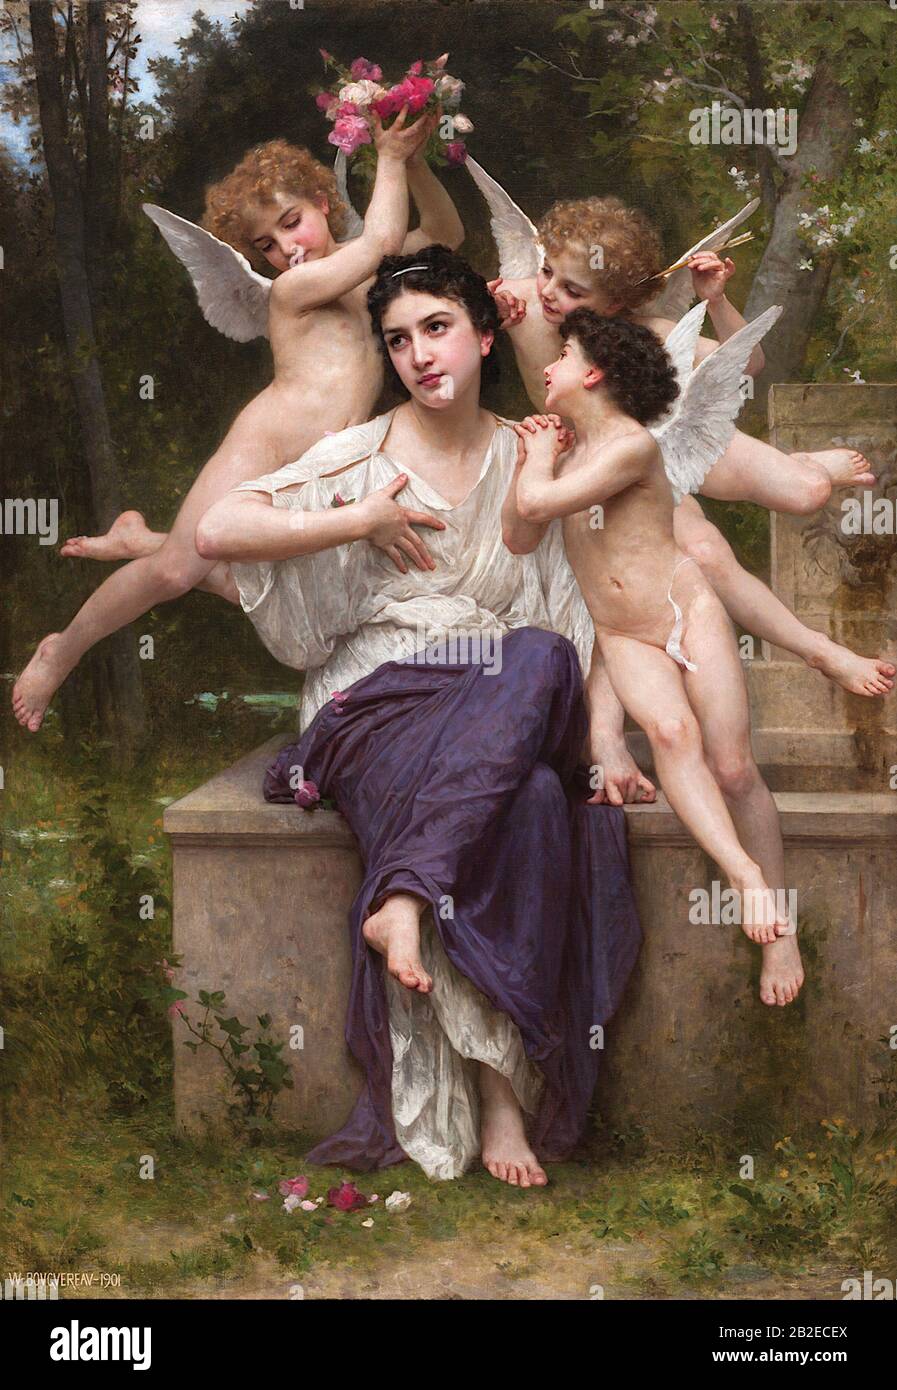 Un rêve du printemps (1901) la peinture académique française de William-Adolphe Bouguereau - Très haute résolution et une image de qualité Banque D'Images